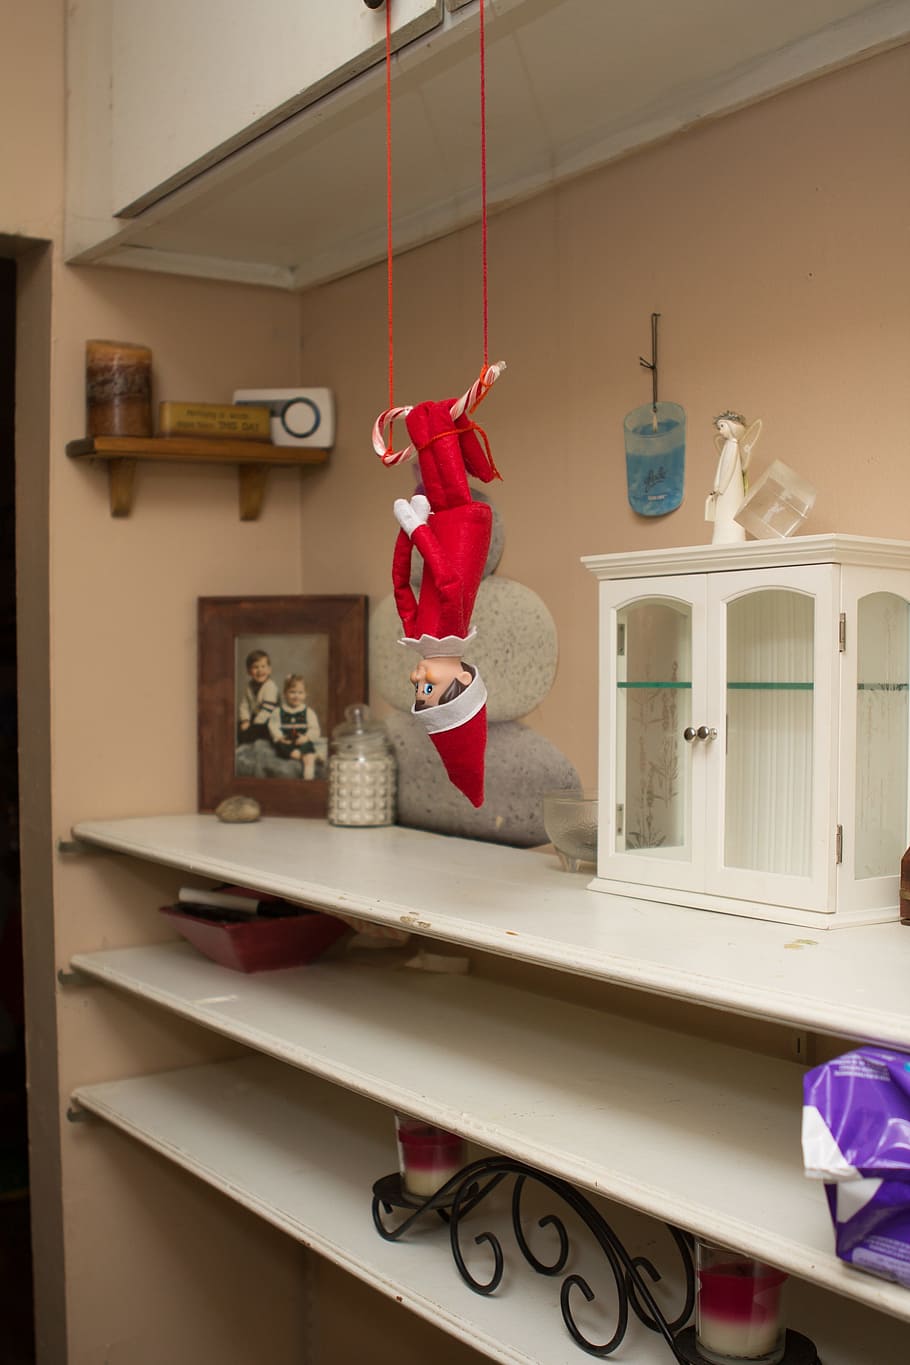 赤いエルフ人形, 棚の上のエルフ, クリスマス, 休日, 屋内, 家の部屋, 家のインテリア, 棚, 家の生活, 表現